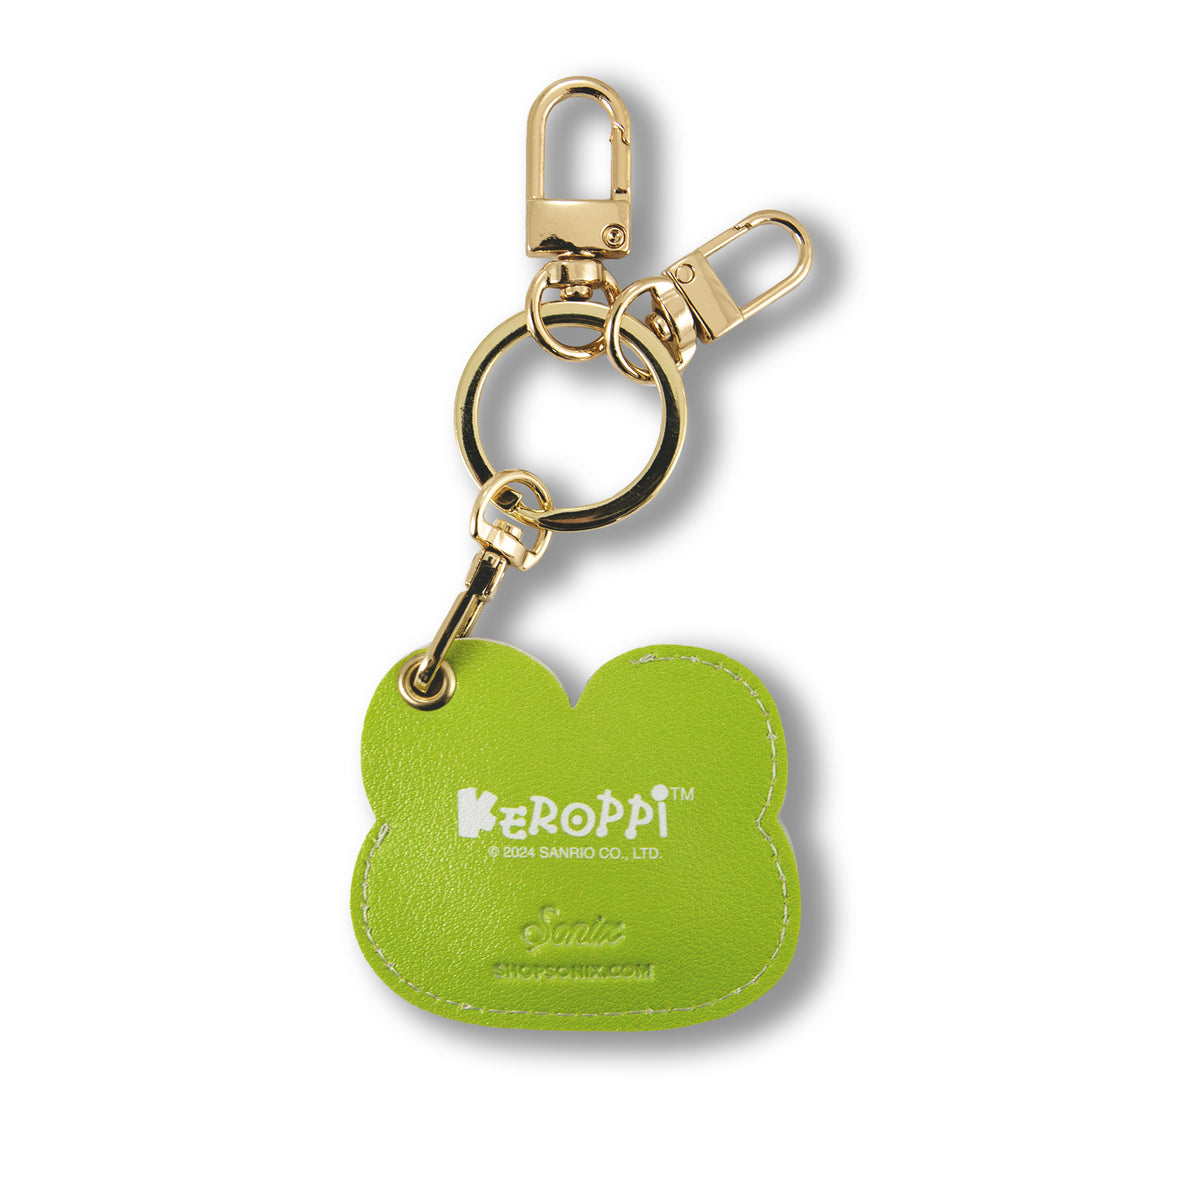 Keroppi x Sonix AirTag Keychain Accessory BySonix Inc.   